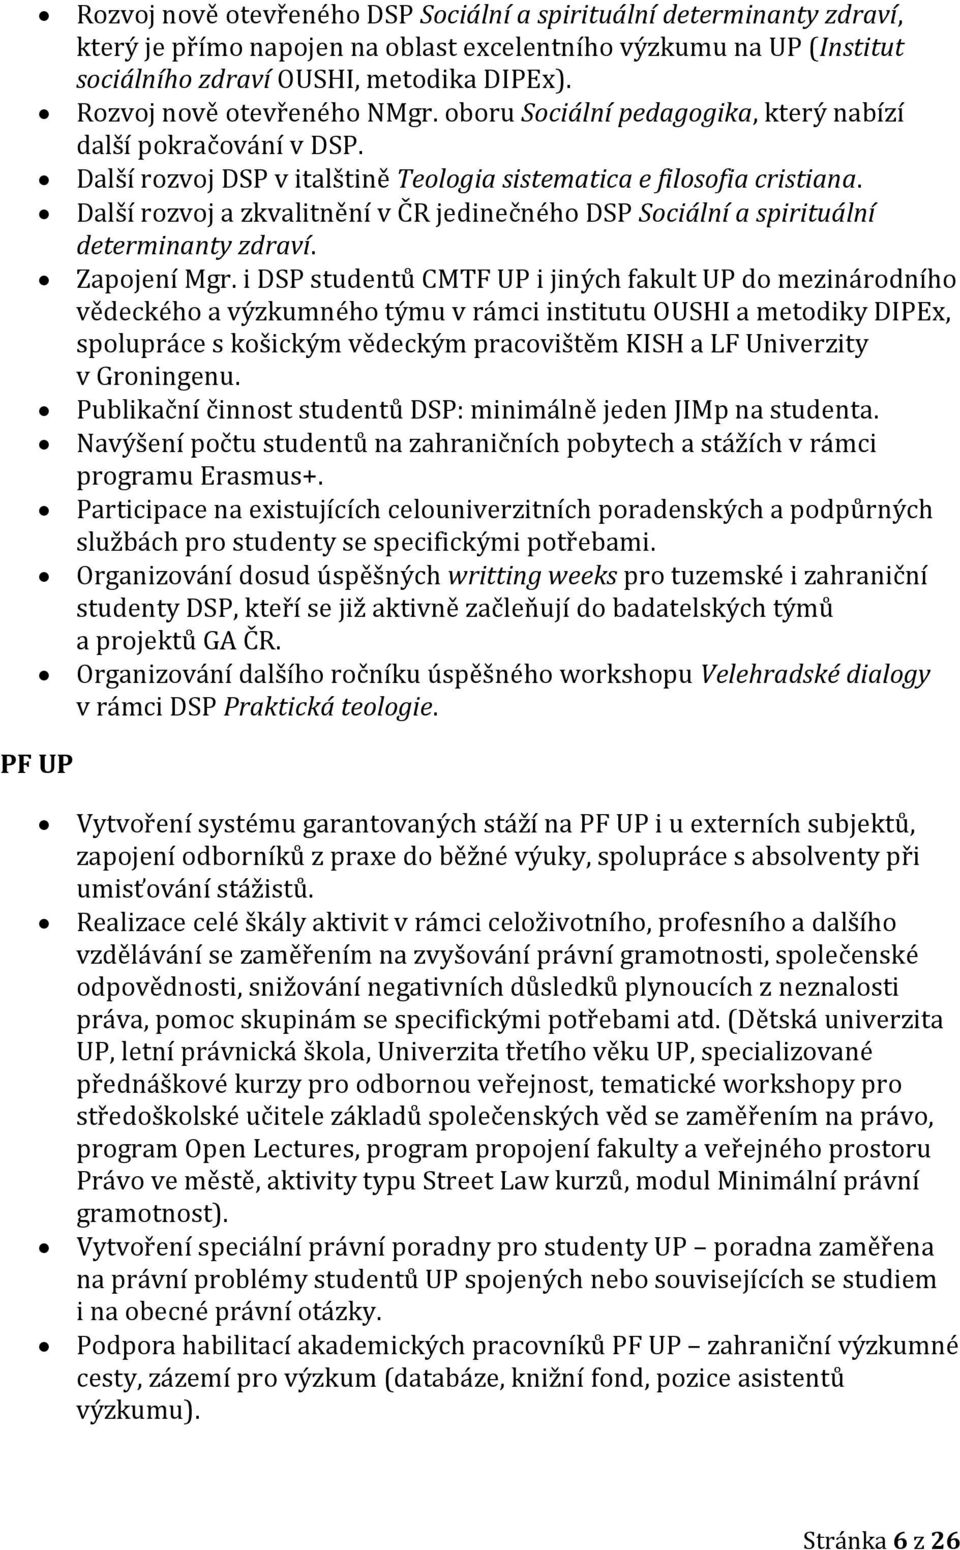 Další rozvoj a zkvalitnění v ČR jedinečného DSP Sociální a spirituální determinanty zdraví. Zapojení Mgr.